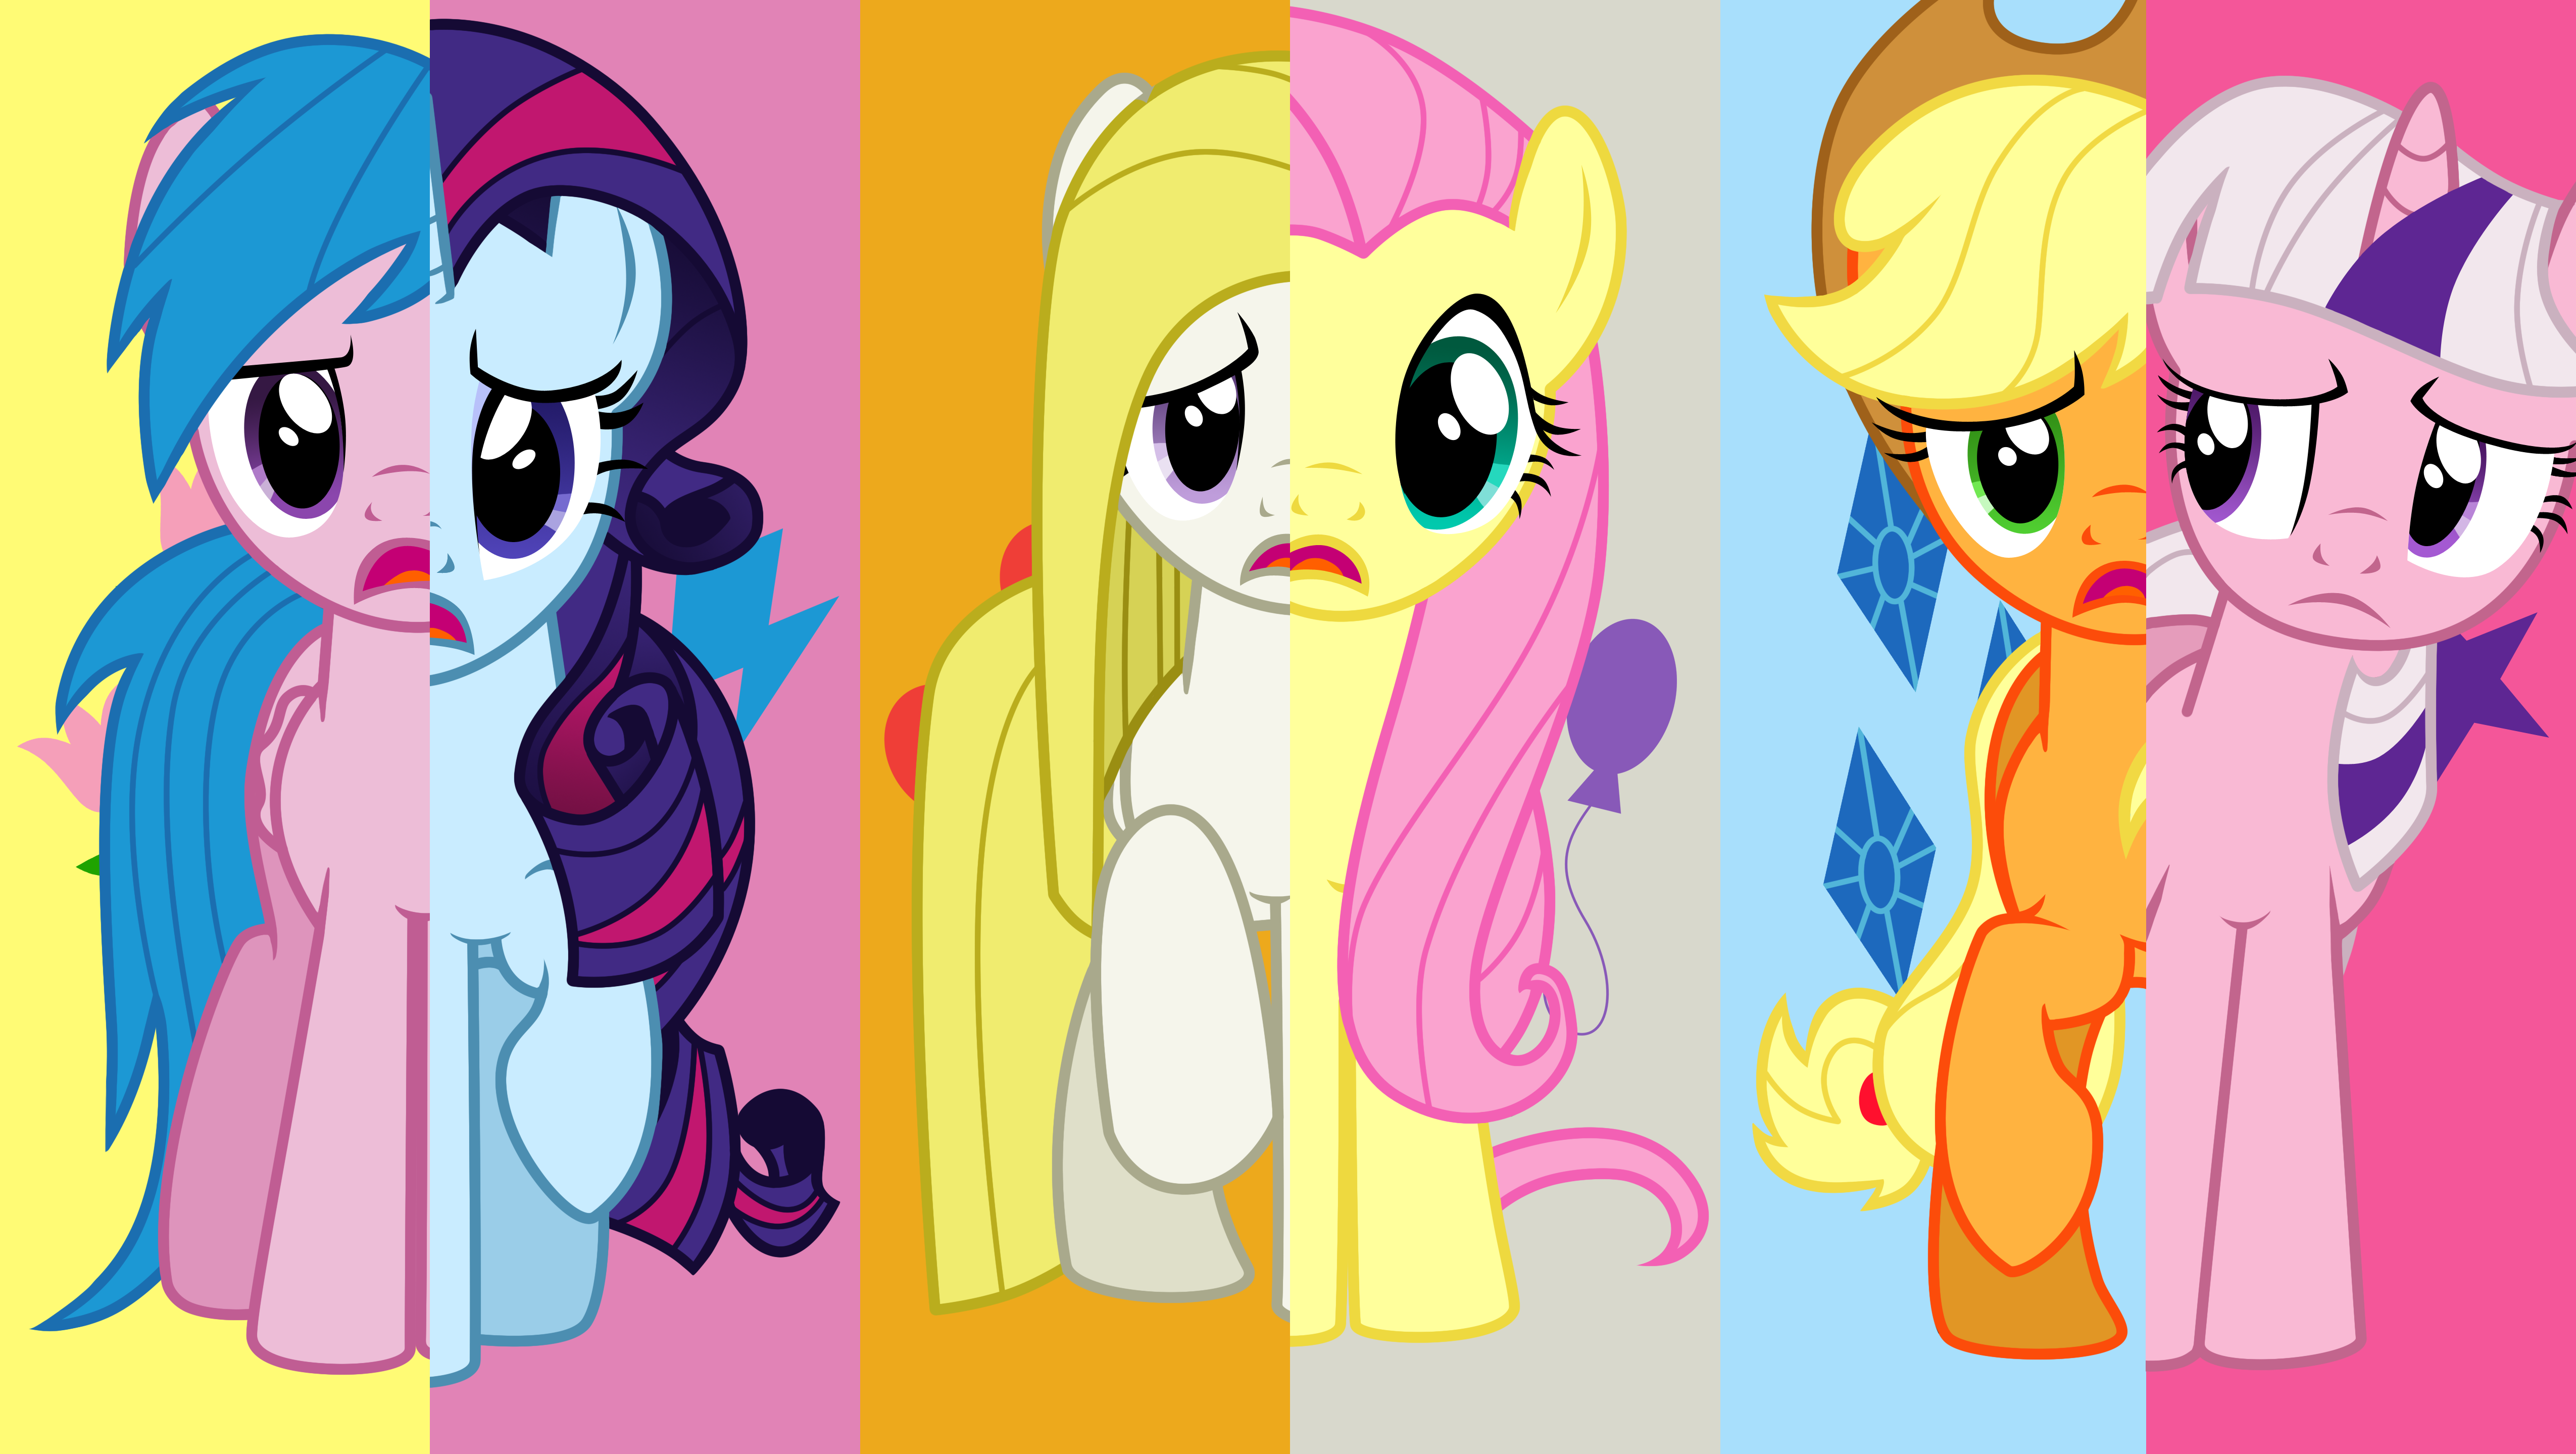 Литл пони характер. МЛП g1 персонажи. My little Pony поколение g1. MLP g1 Поузи. My little Pony персонажи.